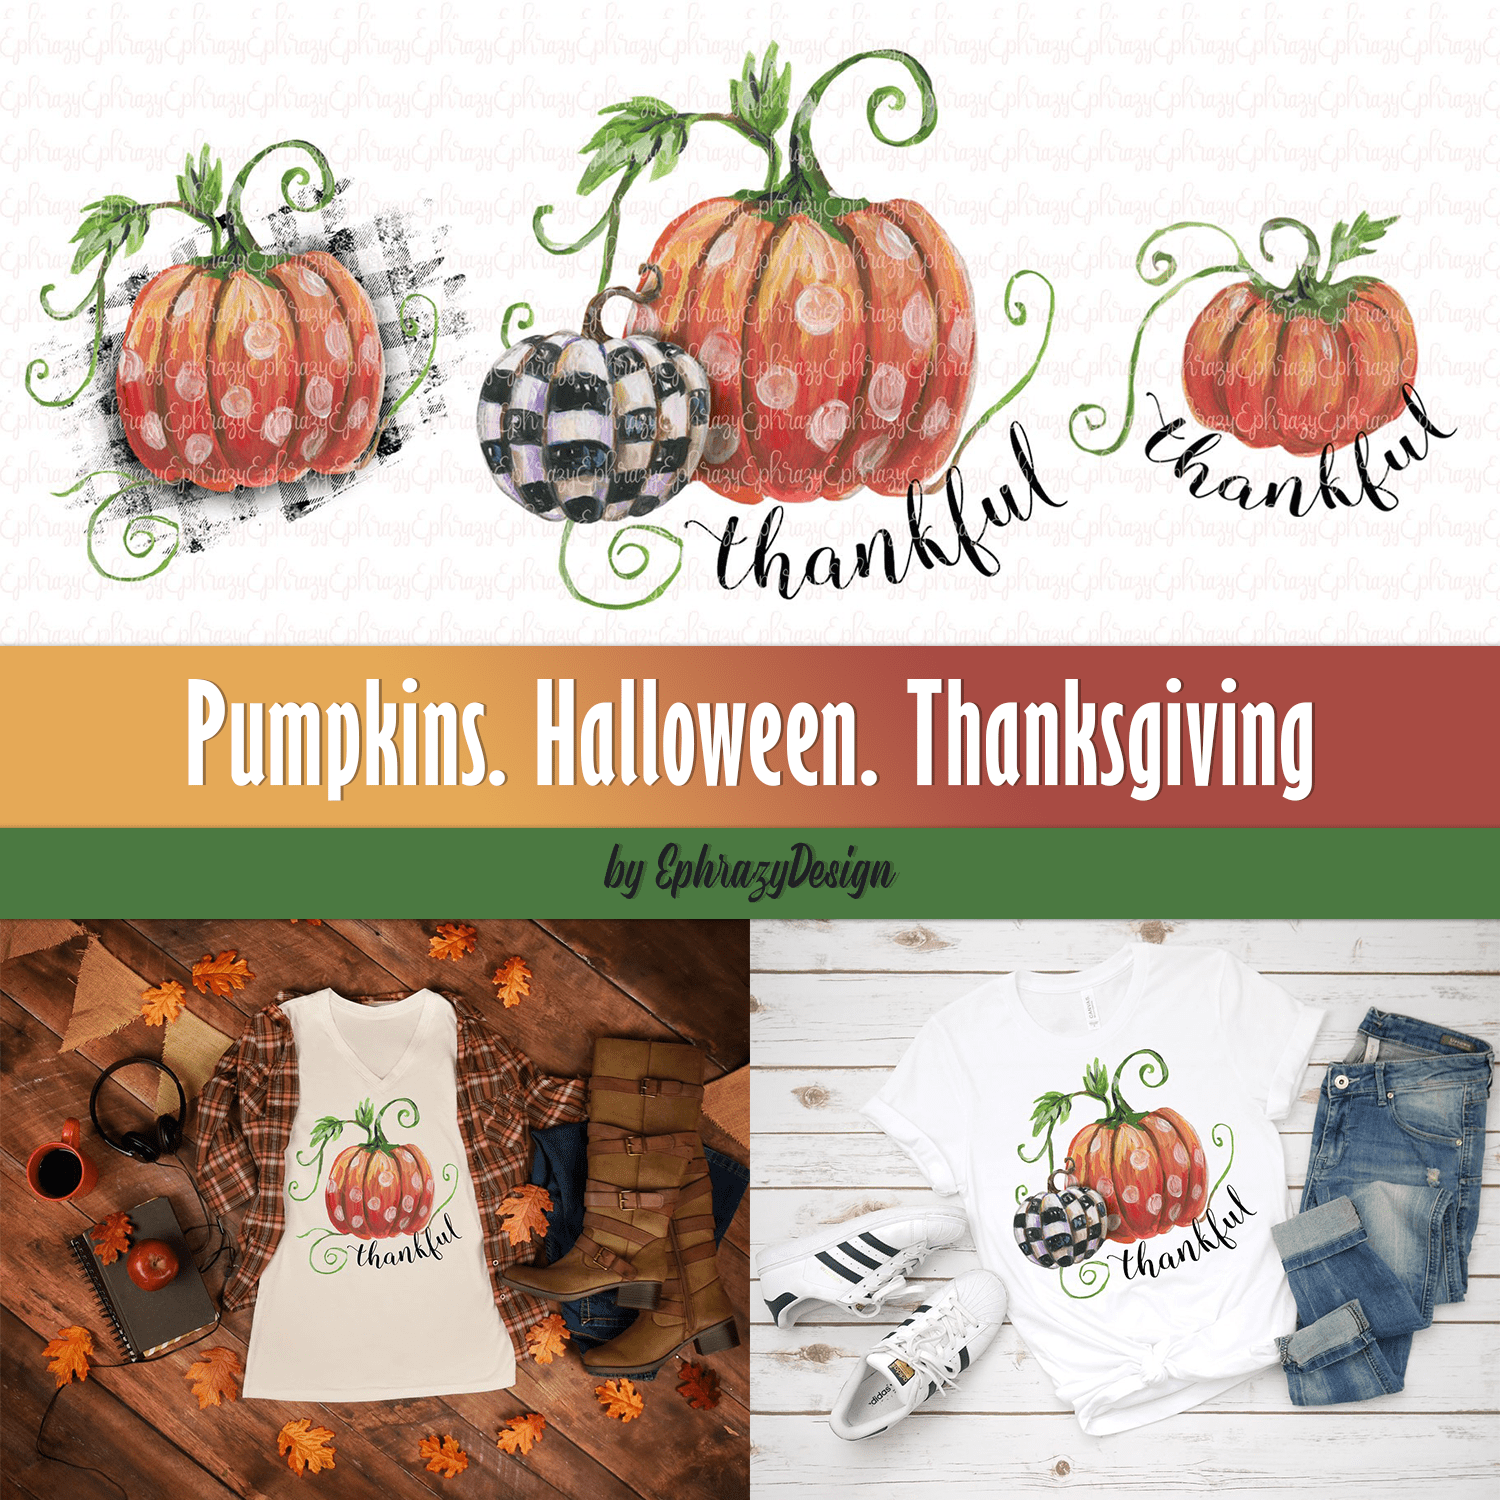 Pumpkins. Halloween. Thanksgiving cover.